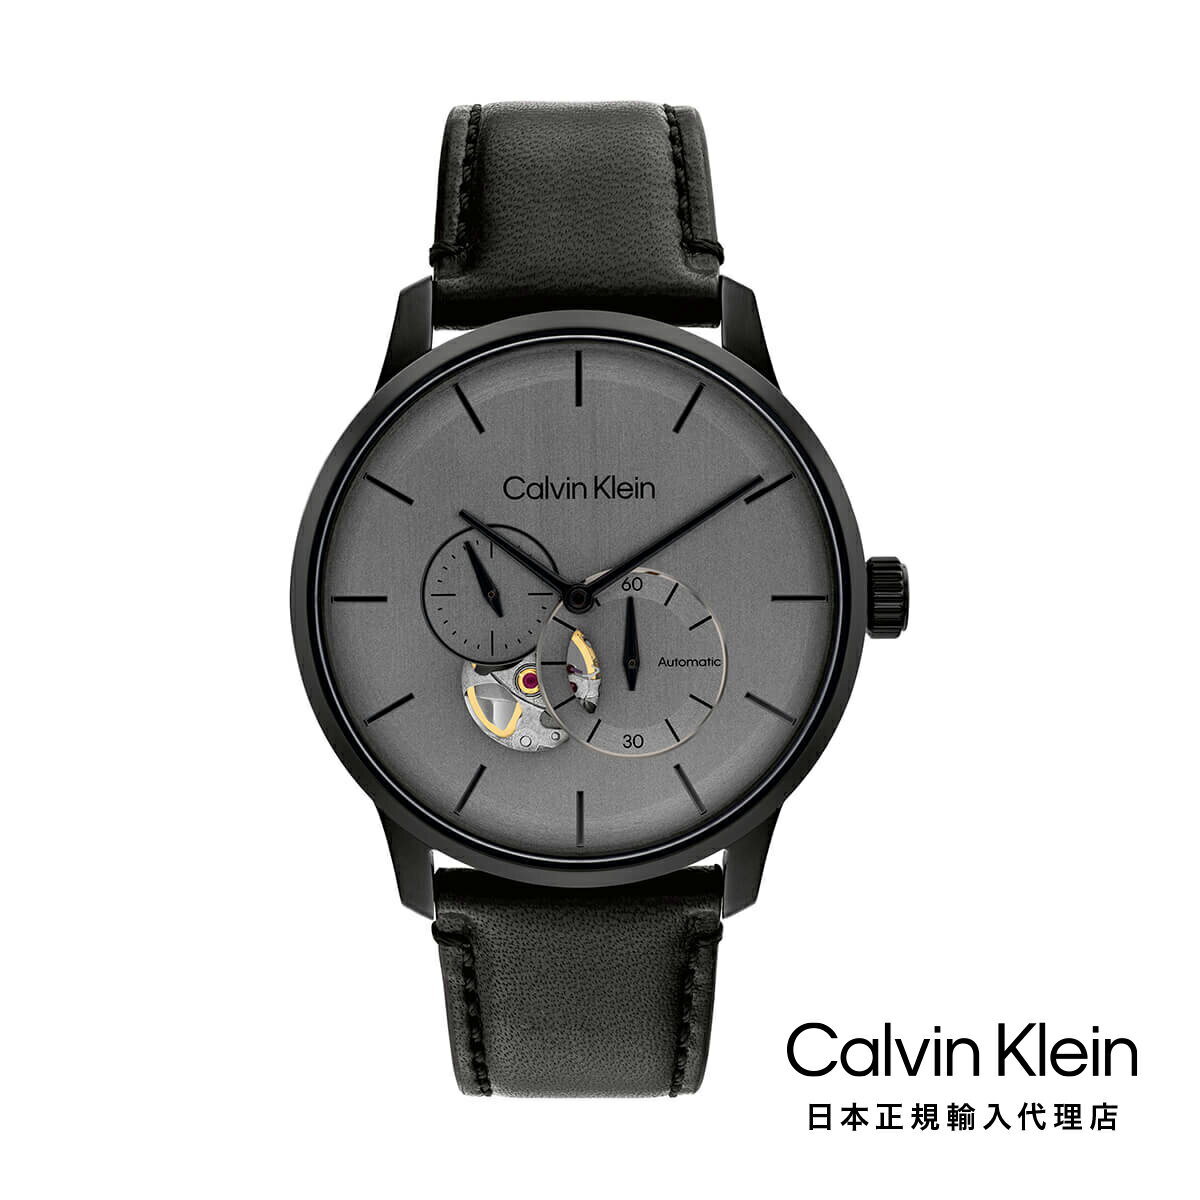 Calvin Klein カルバンクライン 日本総輸入代理 腕時計 メンズ ブランド オートマティック ブラック IP 42MM グレー ブラッシュド ダイヤル/ブラック レザー ストラップ